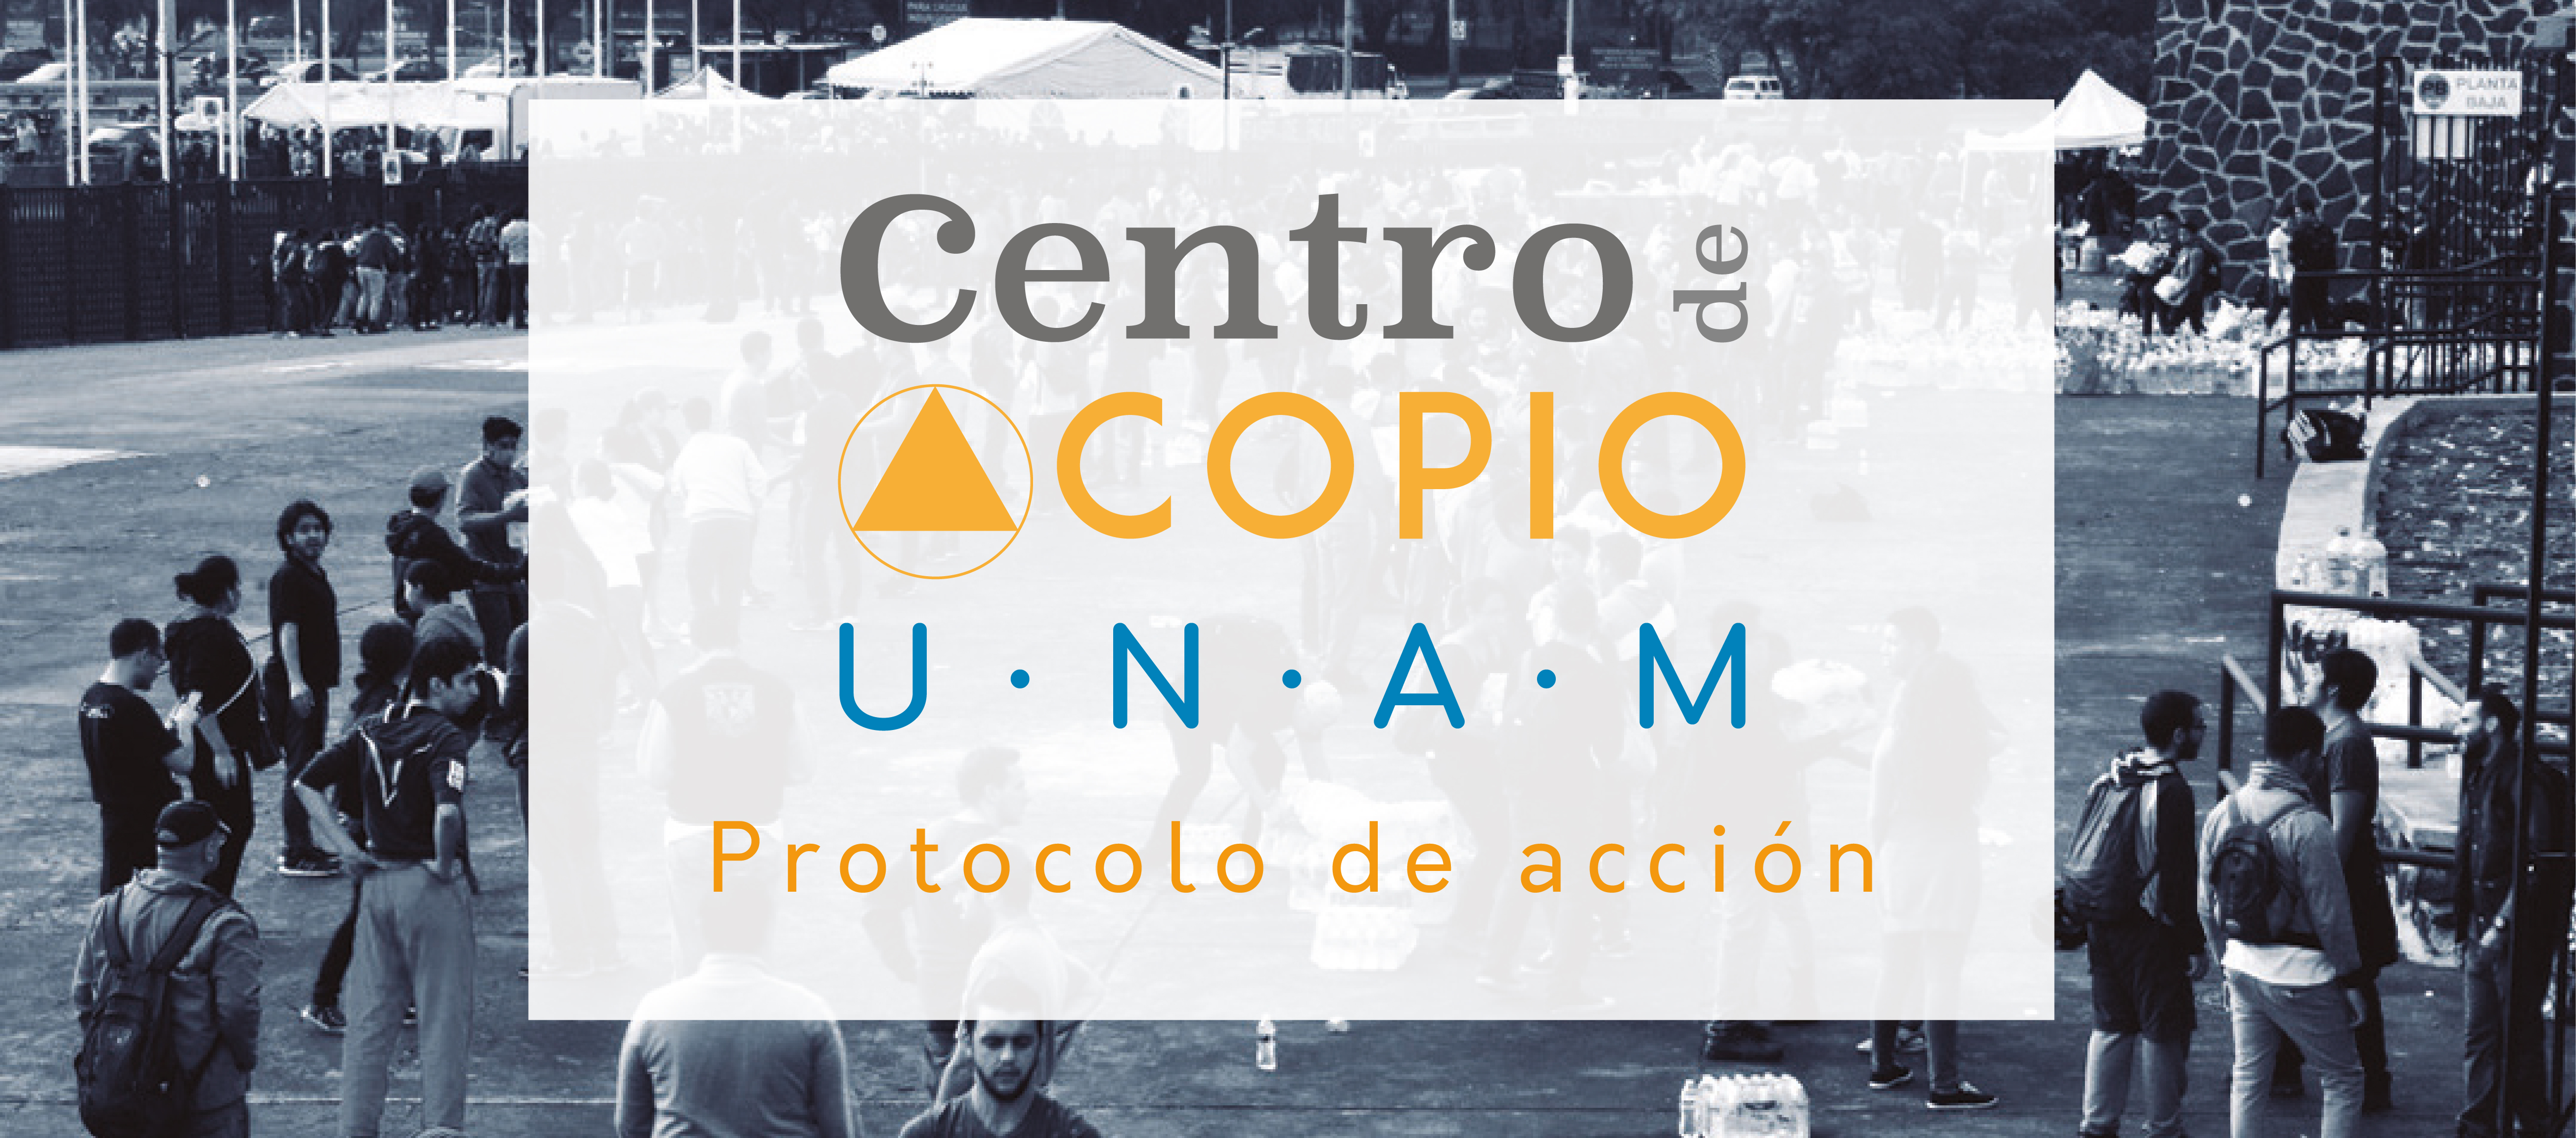 UNAM Solidaria